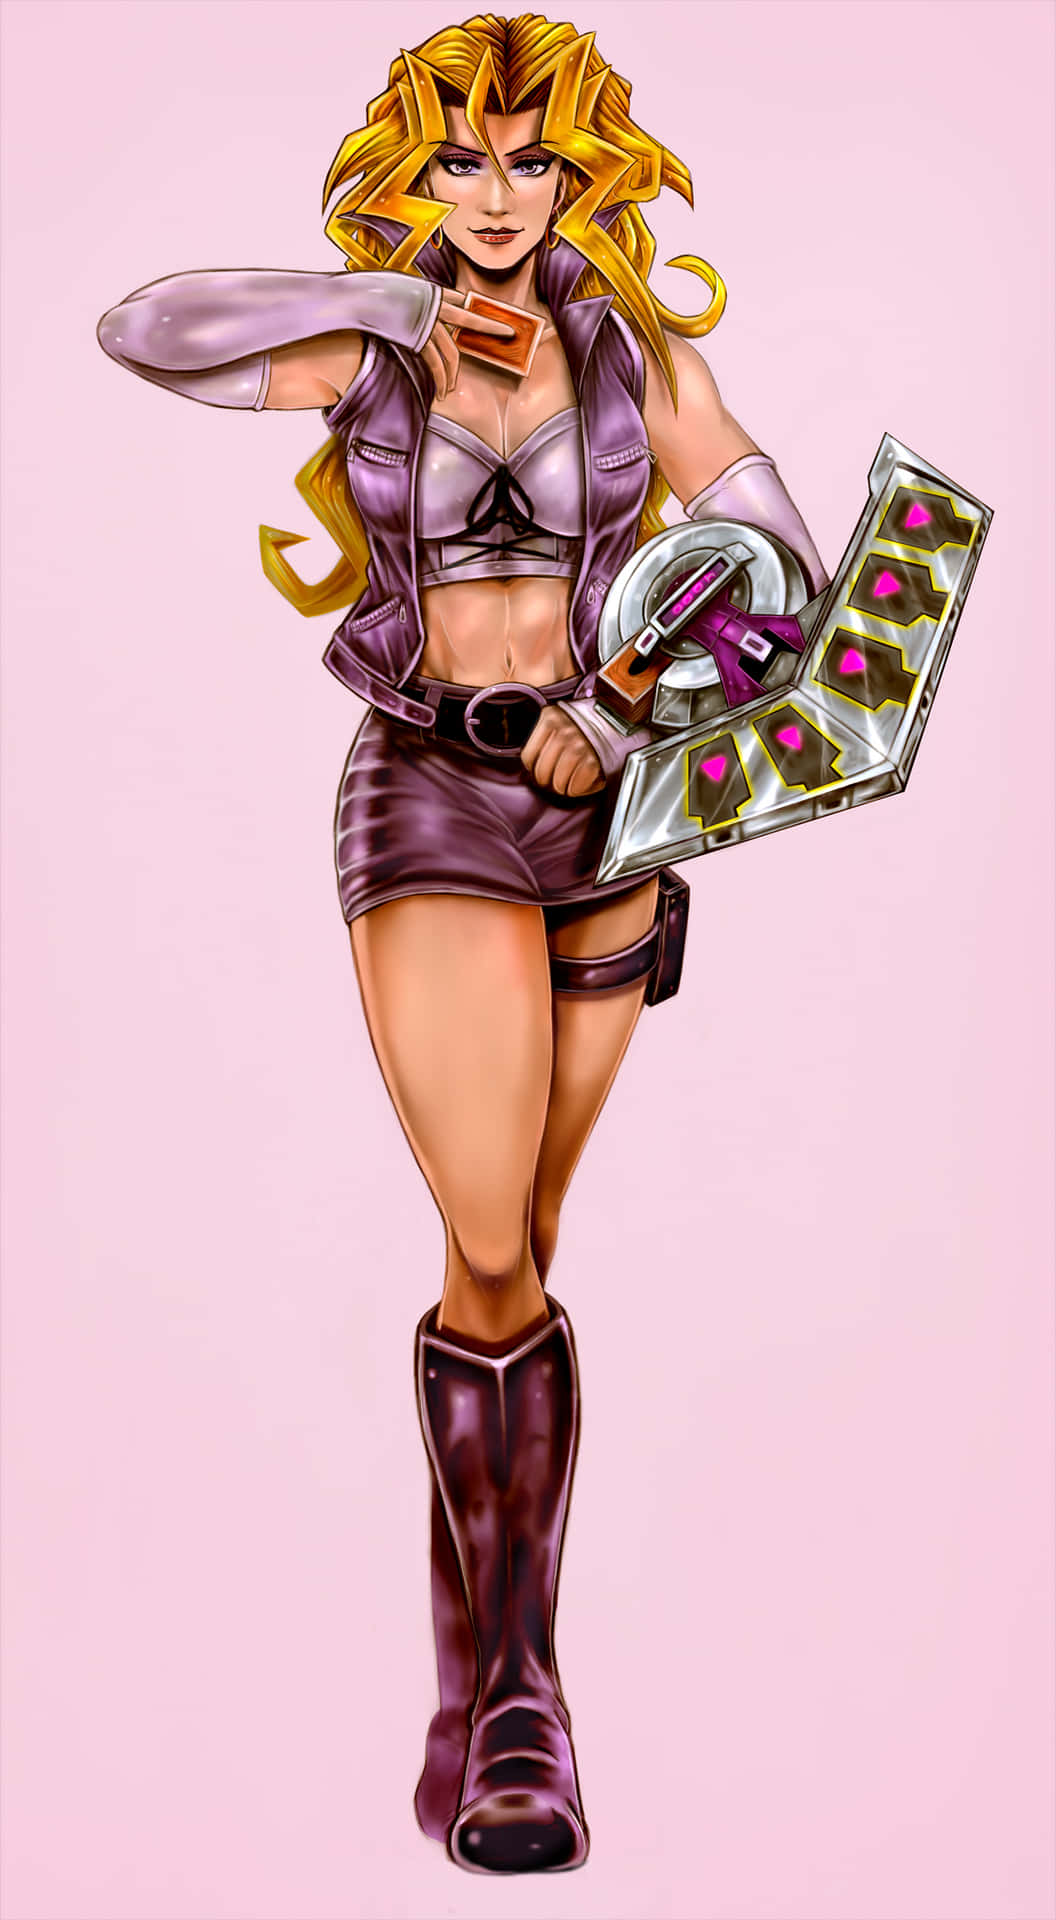 Mai Valentine - Duelist Queen of the Harpies Wallpaper